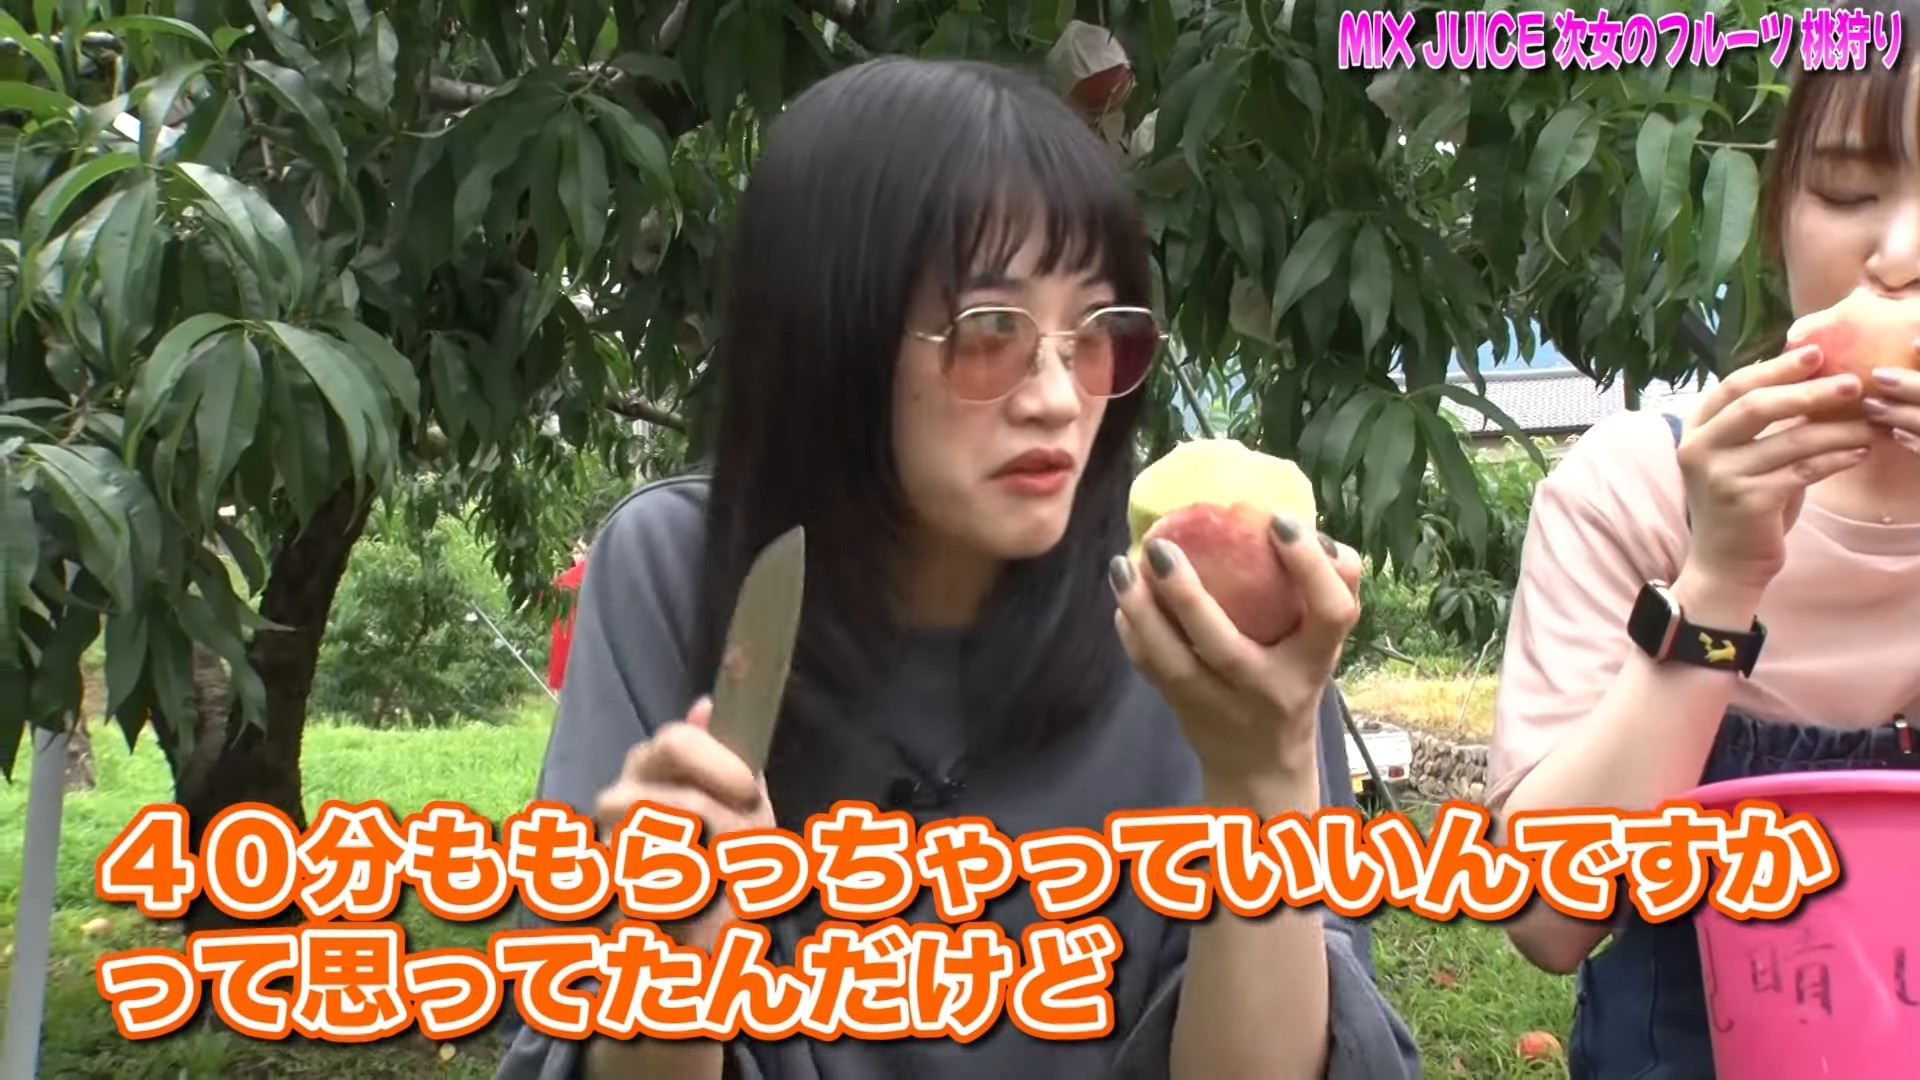 %title%【動画】小泉萌香さん、ドスを閃かせ桃を食ふ。【声優】